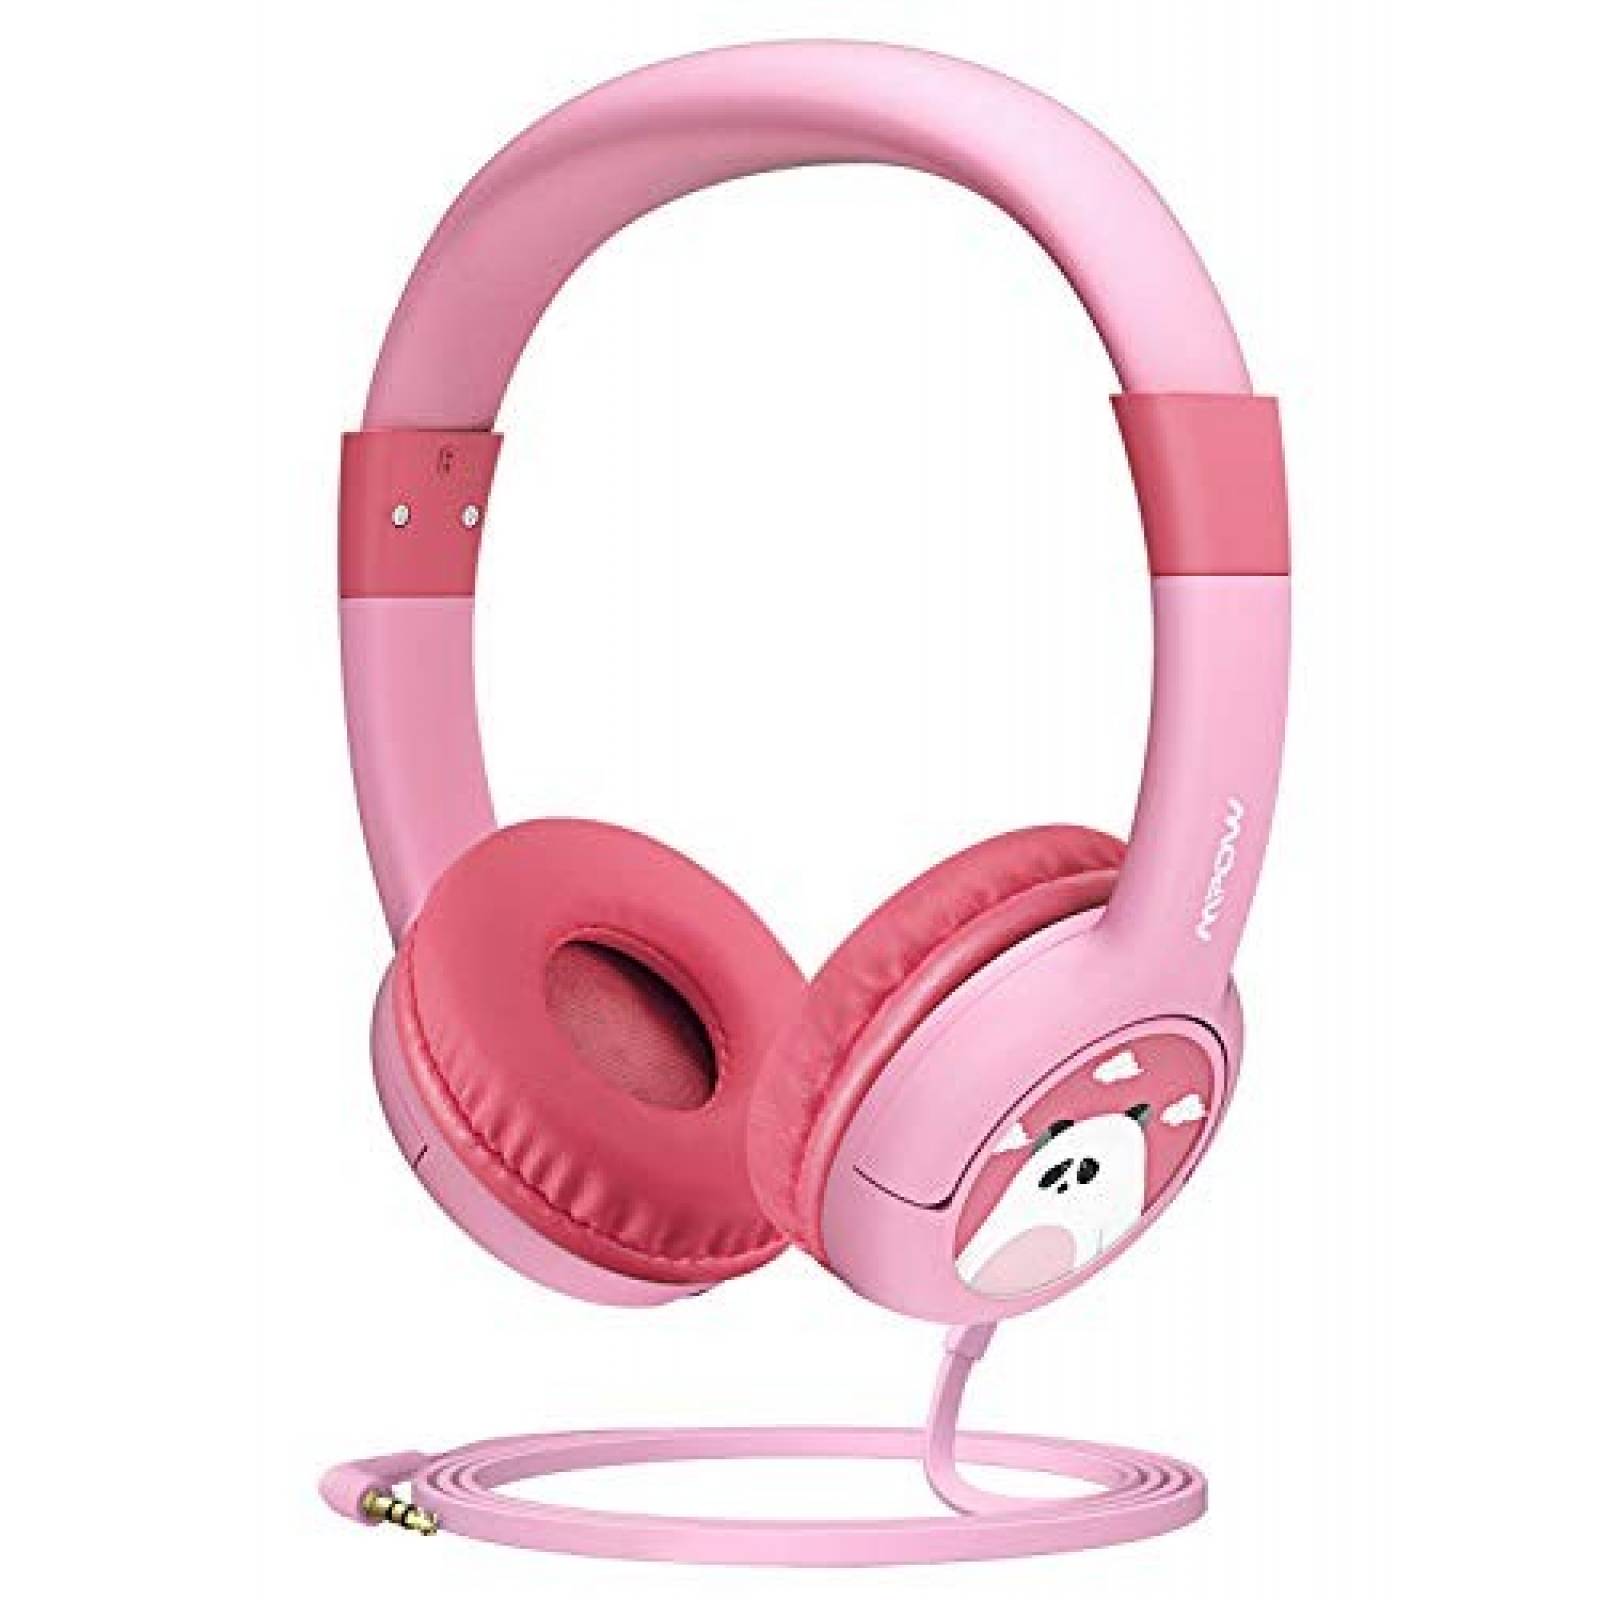 Auriculares infantiles Mpow protección auditiva -Rosa